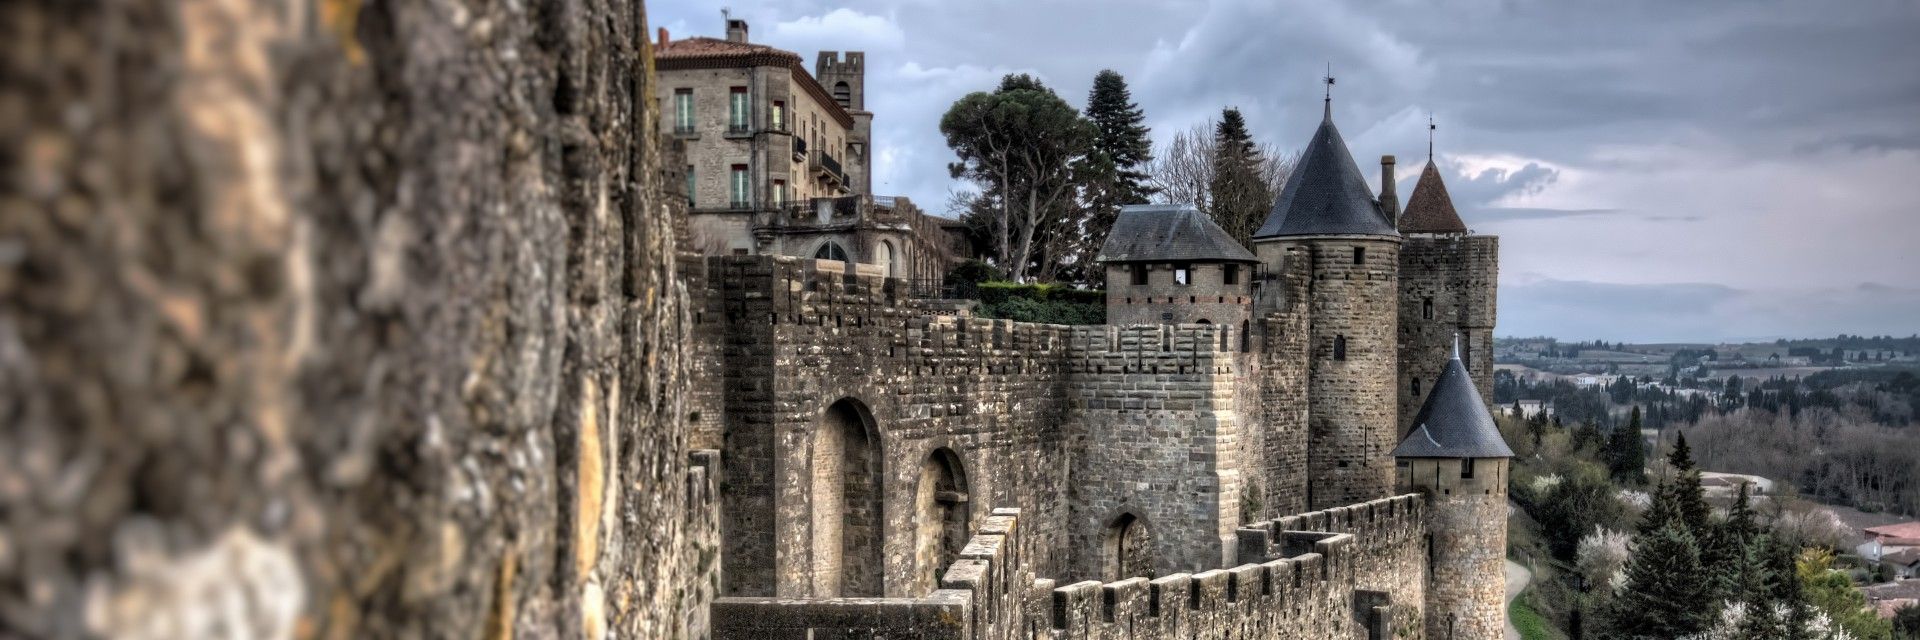 Saint-Nazaire-d'Aude : pour que vive un idéal humain 